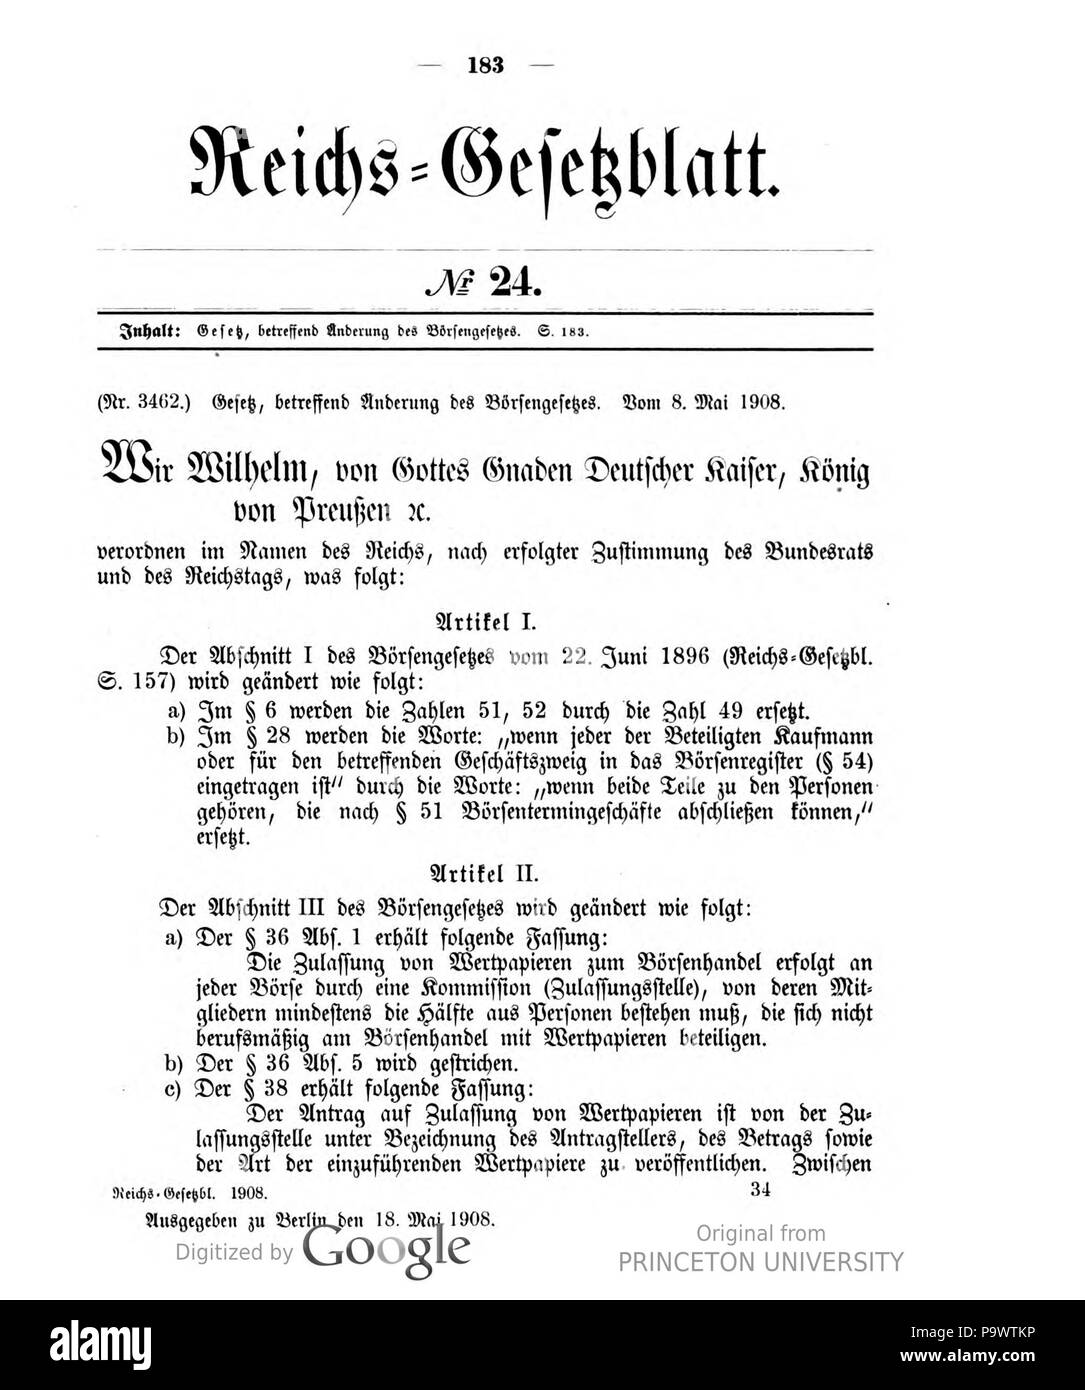 427 Deutsches Reichsgesetzblatt 1908 024 183 Stock Photo